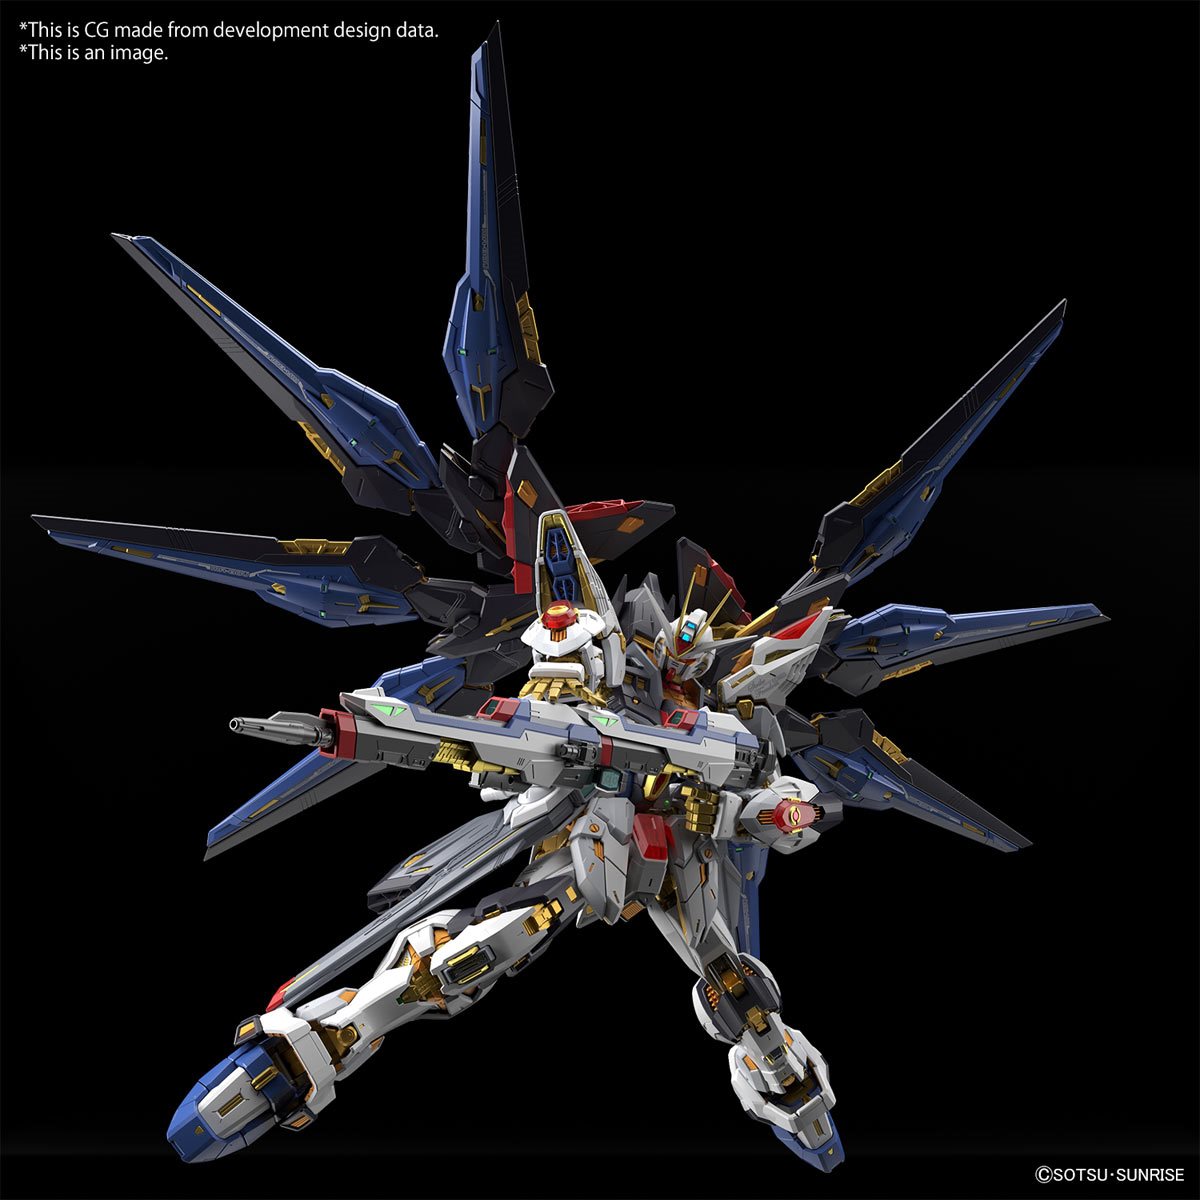 Bandai Hobby Gunpla Model Kit: Gundam SEED Destiny - Strike Freedom Gundam Master Grade Extreme Escala 1/100